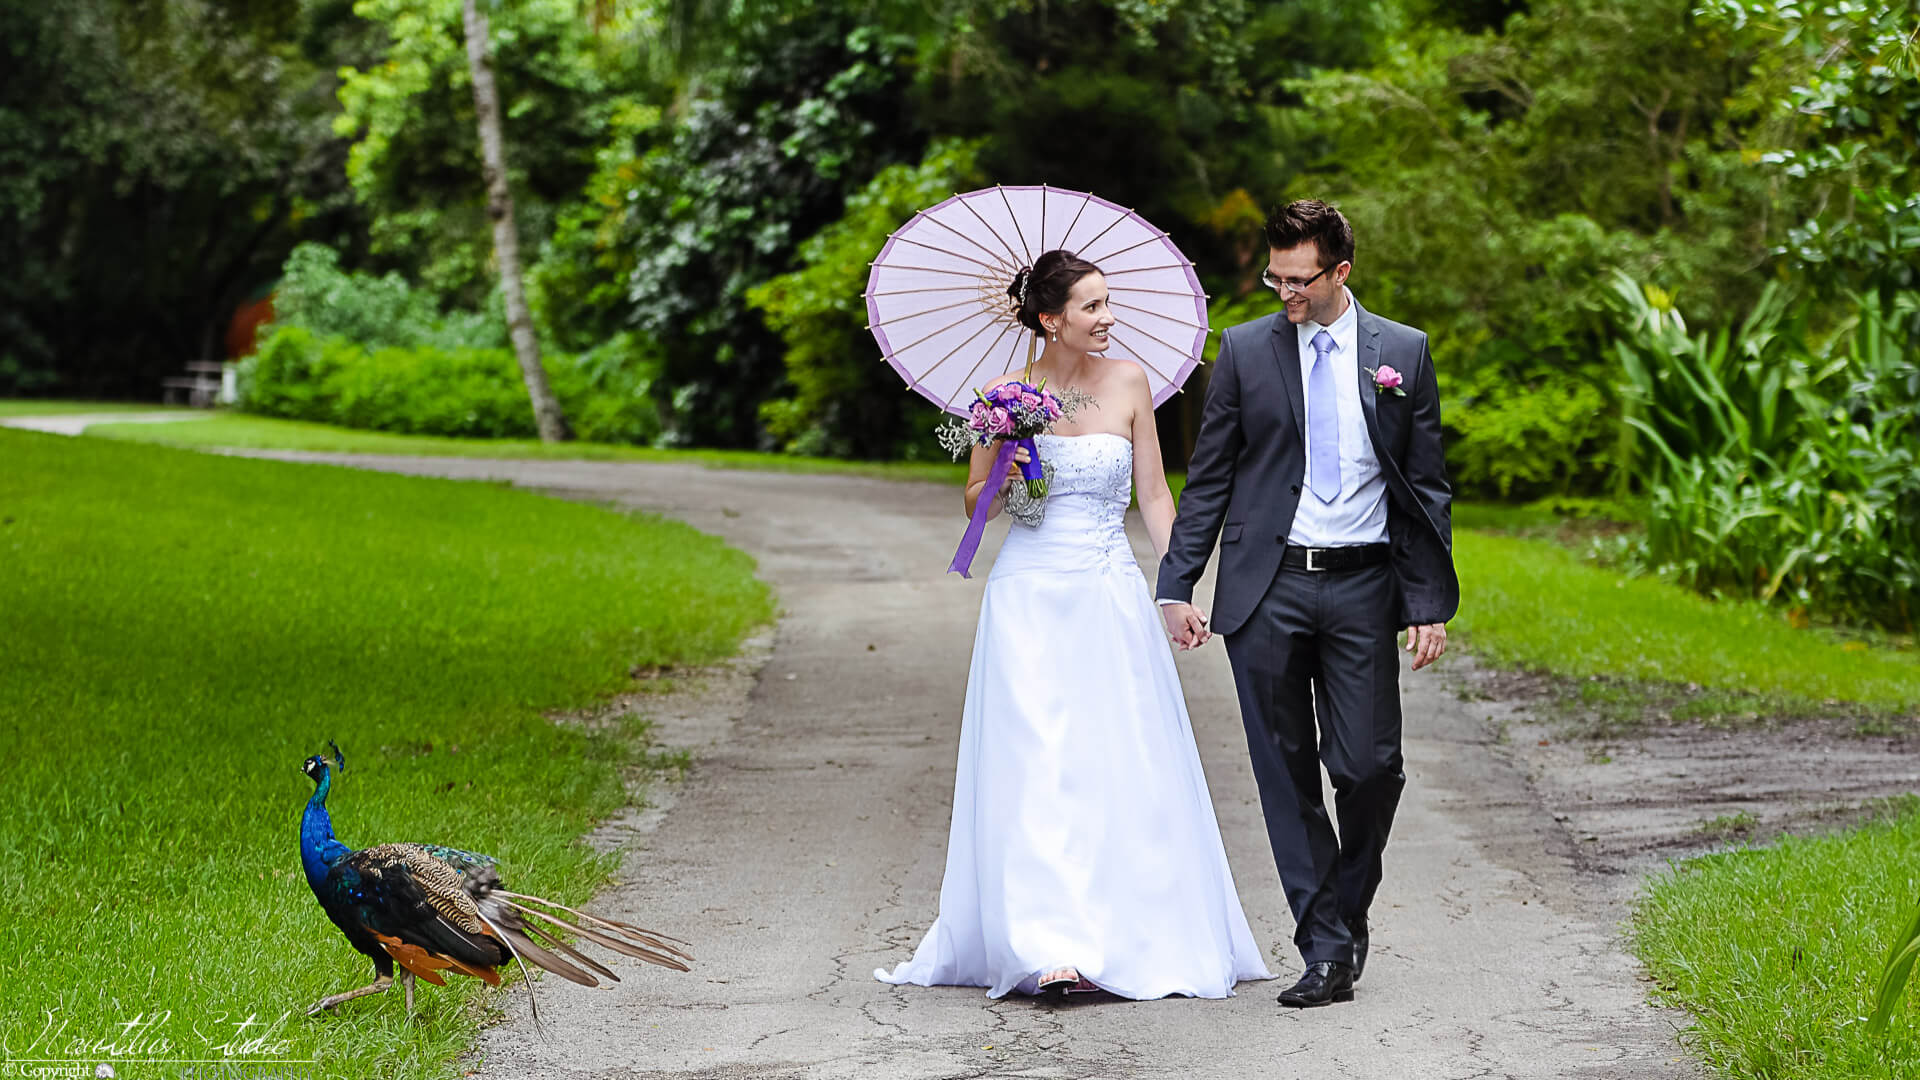 Heiraten in Miami, Bild vom Brautpaar im Park mit Pfauen